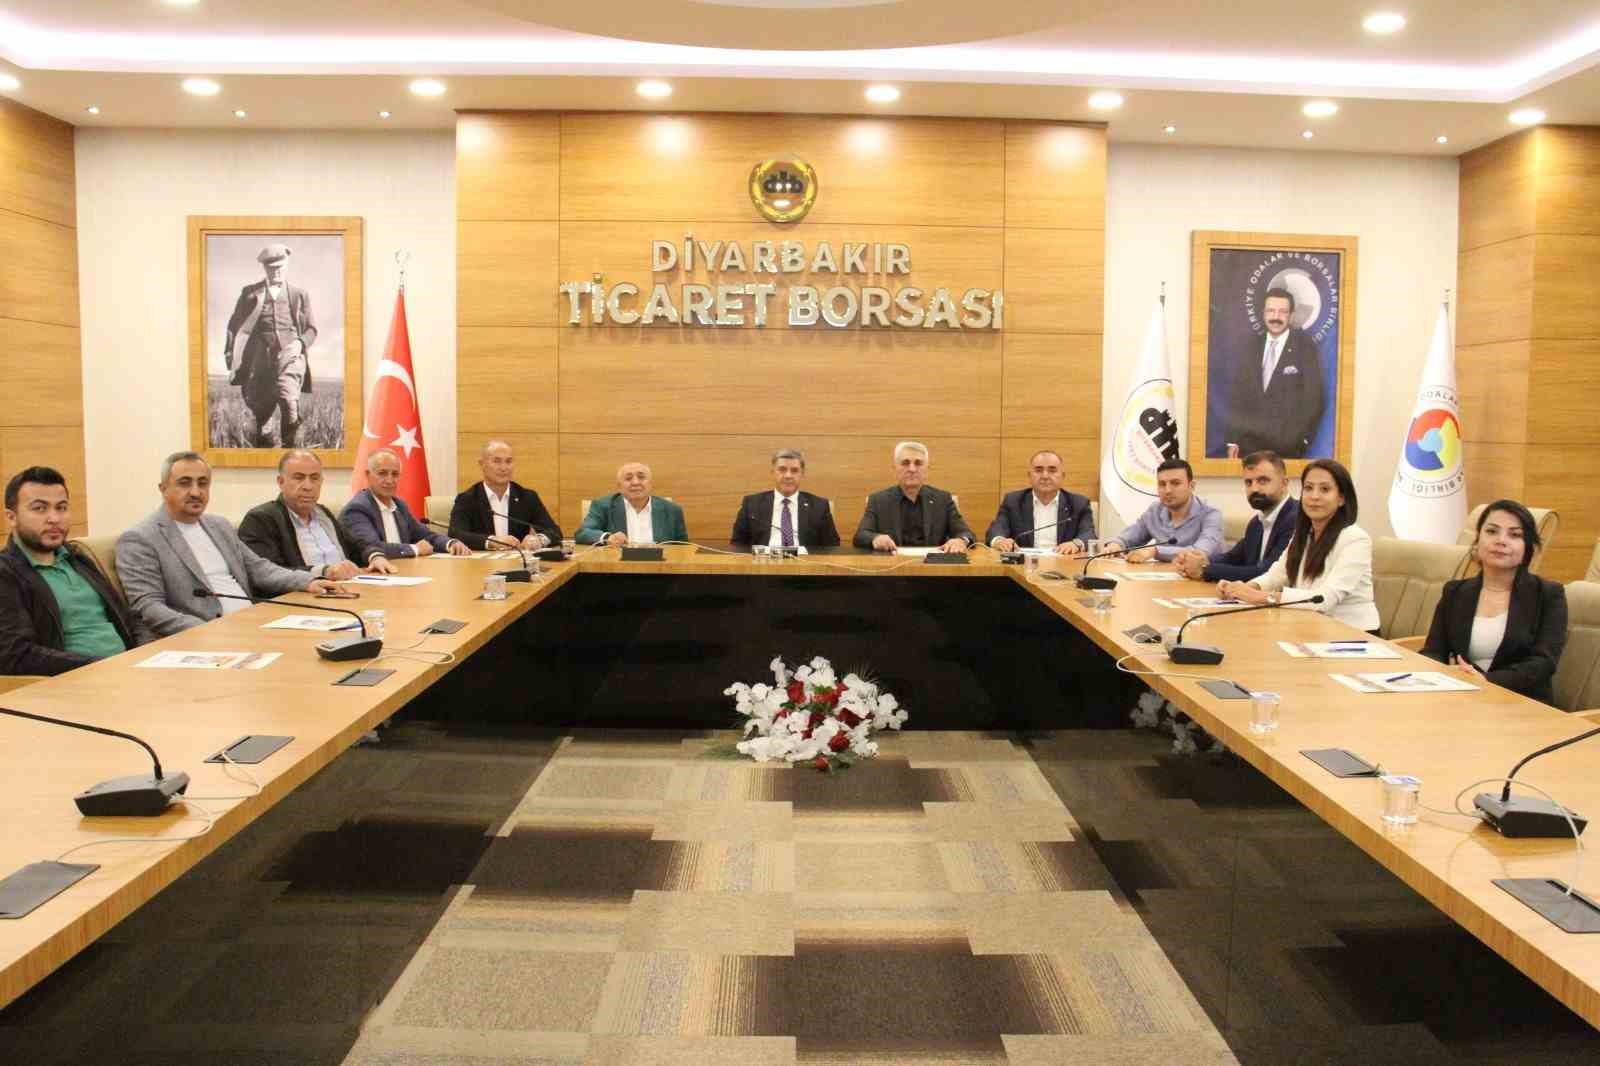 Diyarbakır’da üç borsa arasında iş birliği protokolü imzalandı